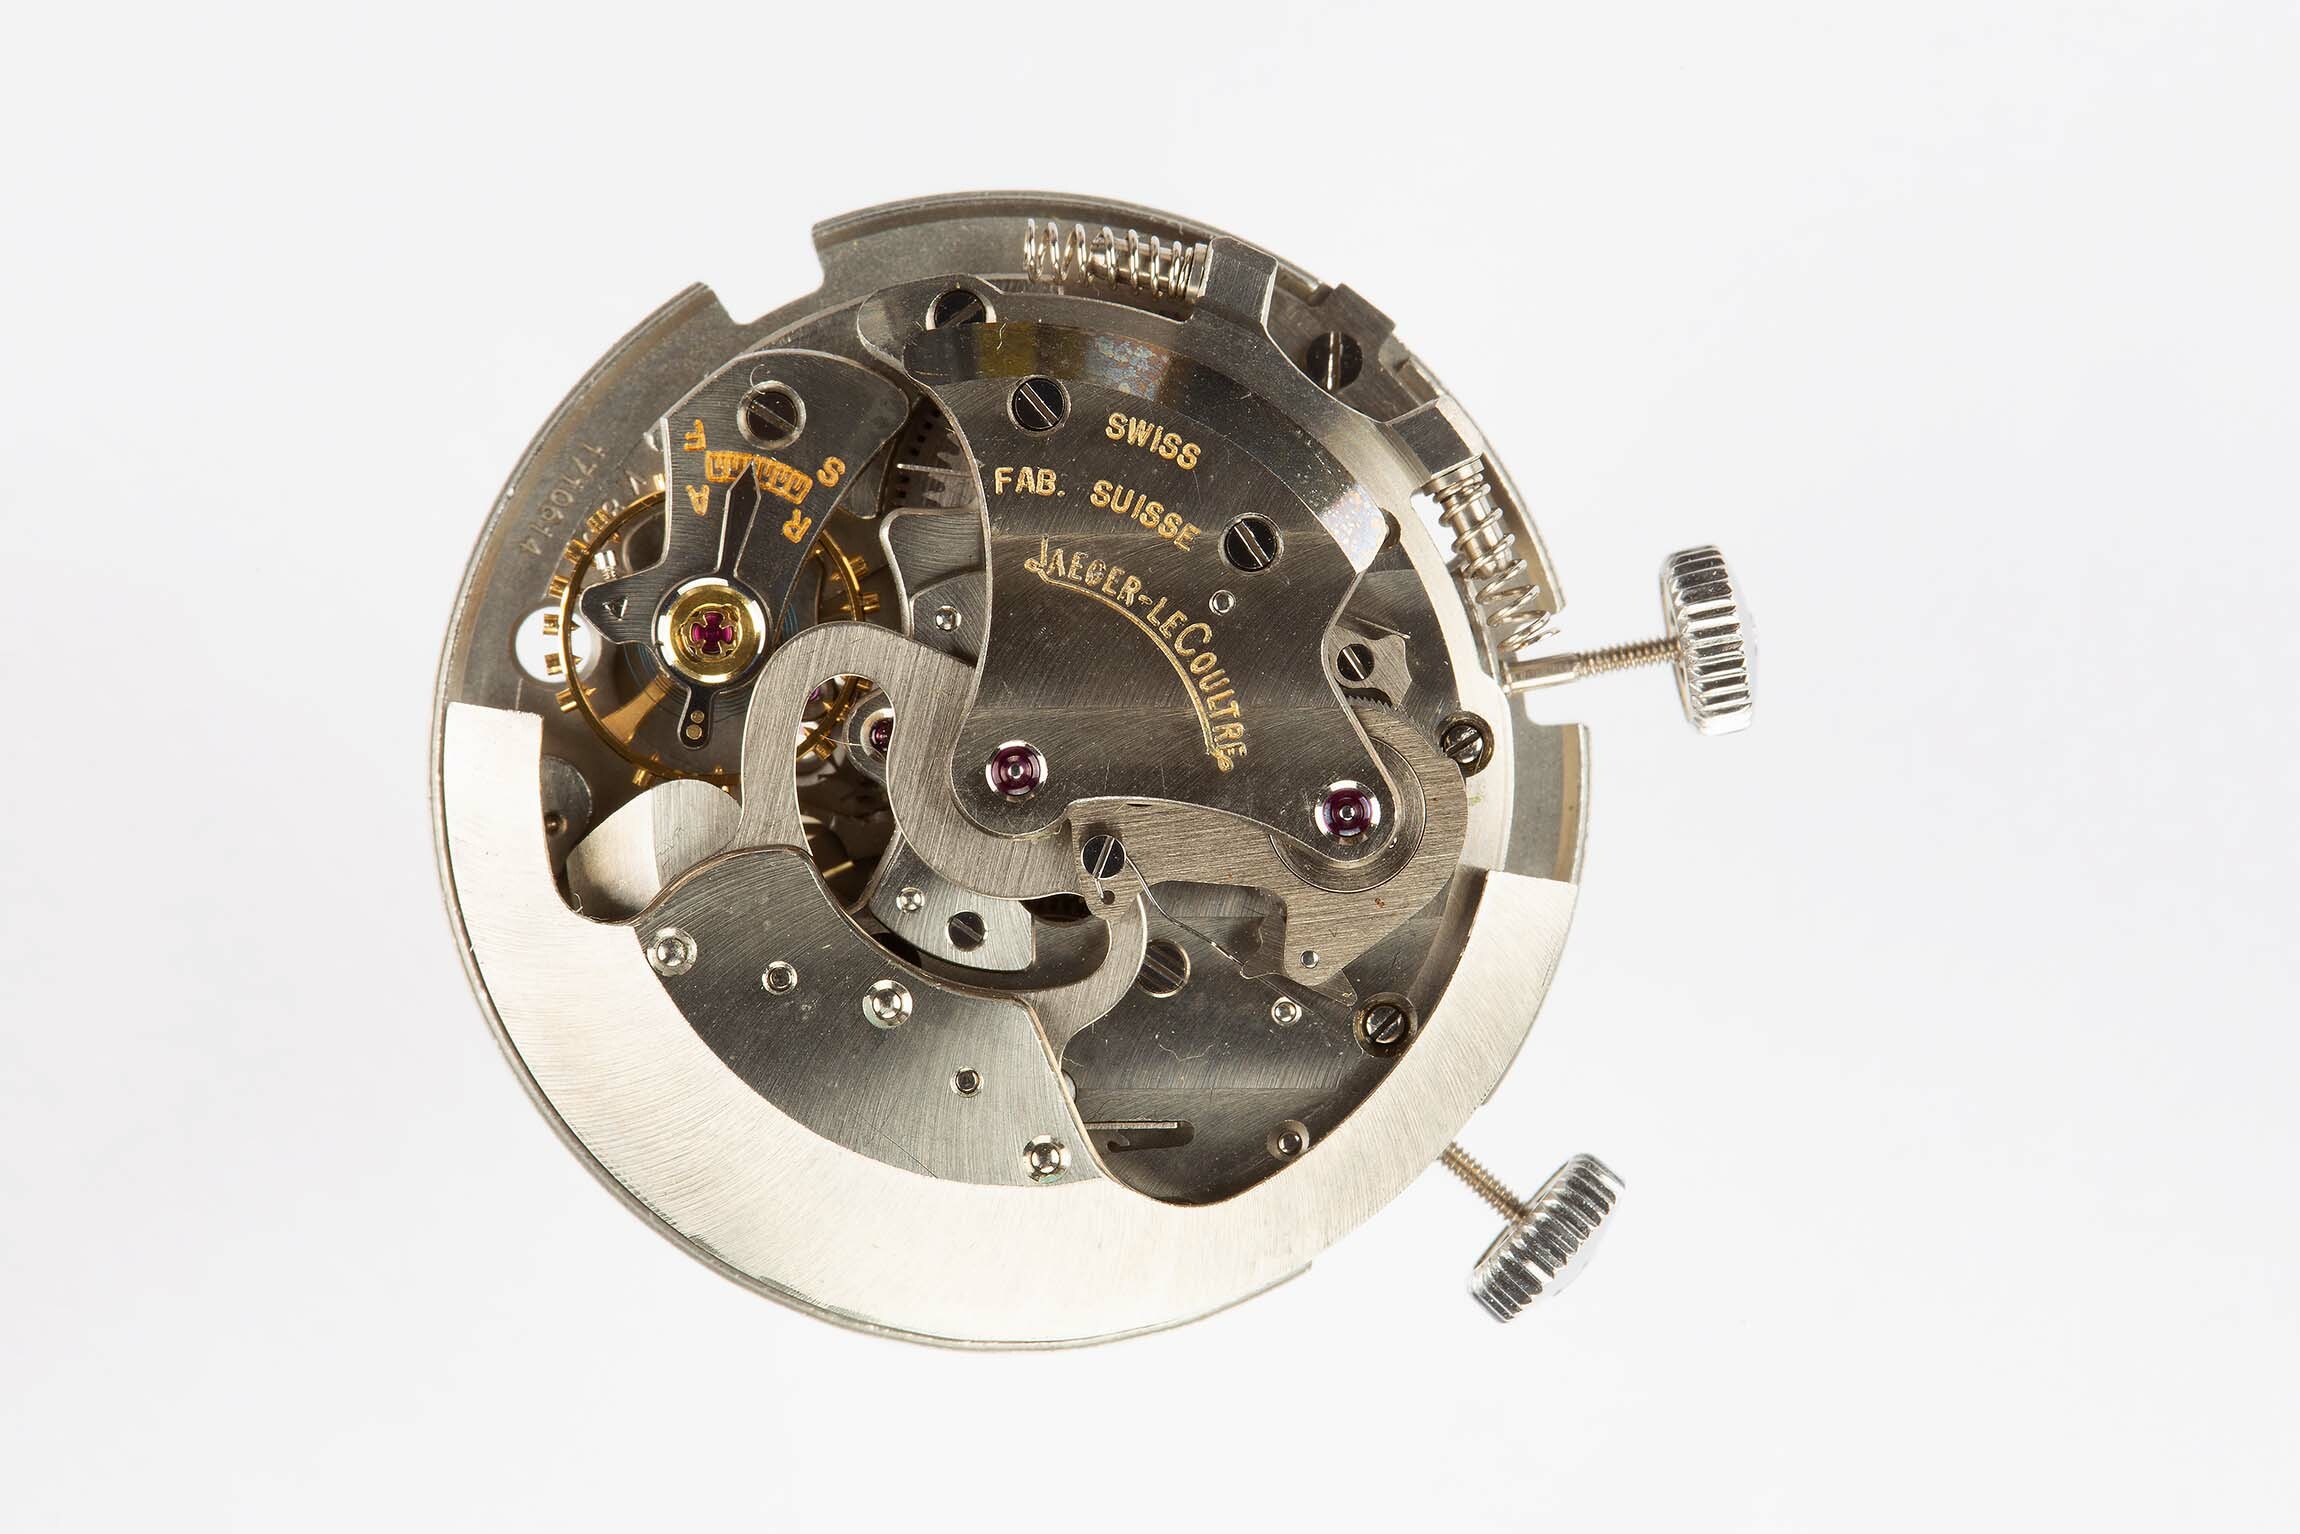 Armbanduhrwerk, Jaeger-LeCoultre, Le Sentier (CH), um 1965 (Deutsches Uhrenmuseum CC BY-SA)